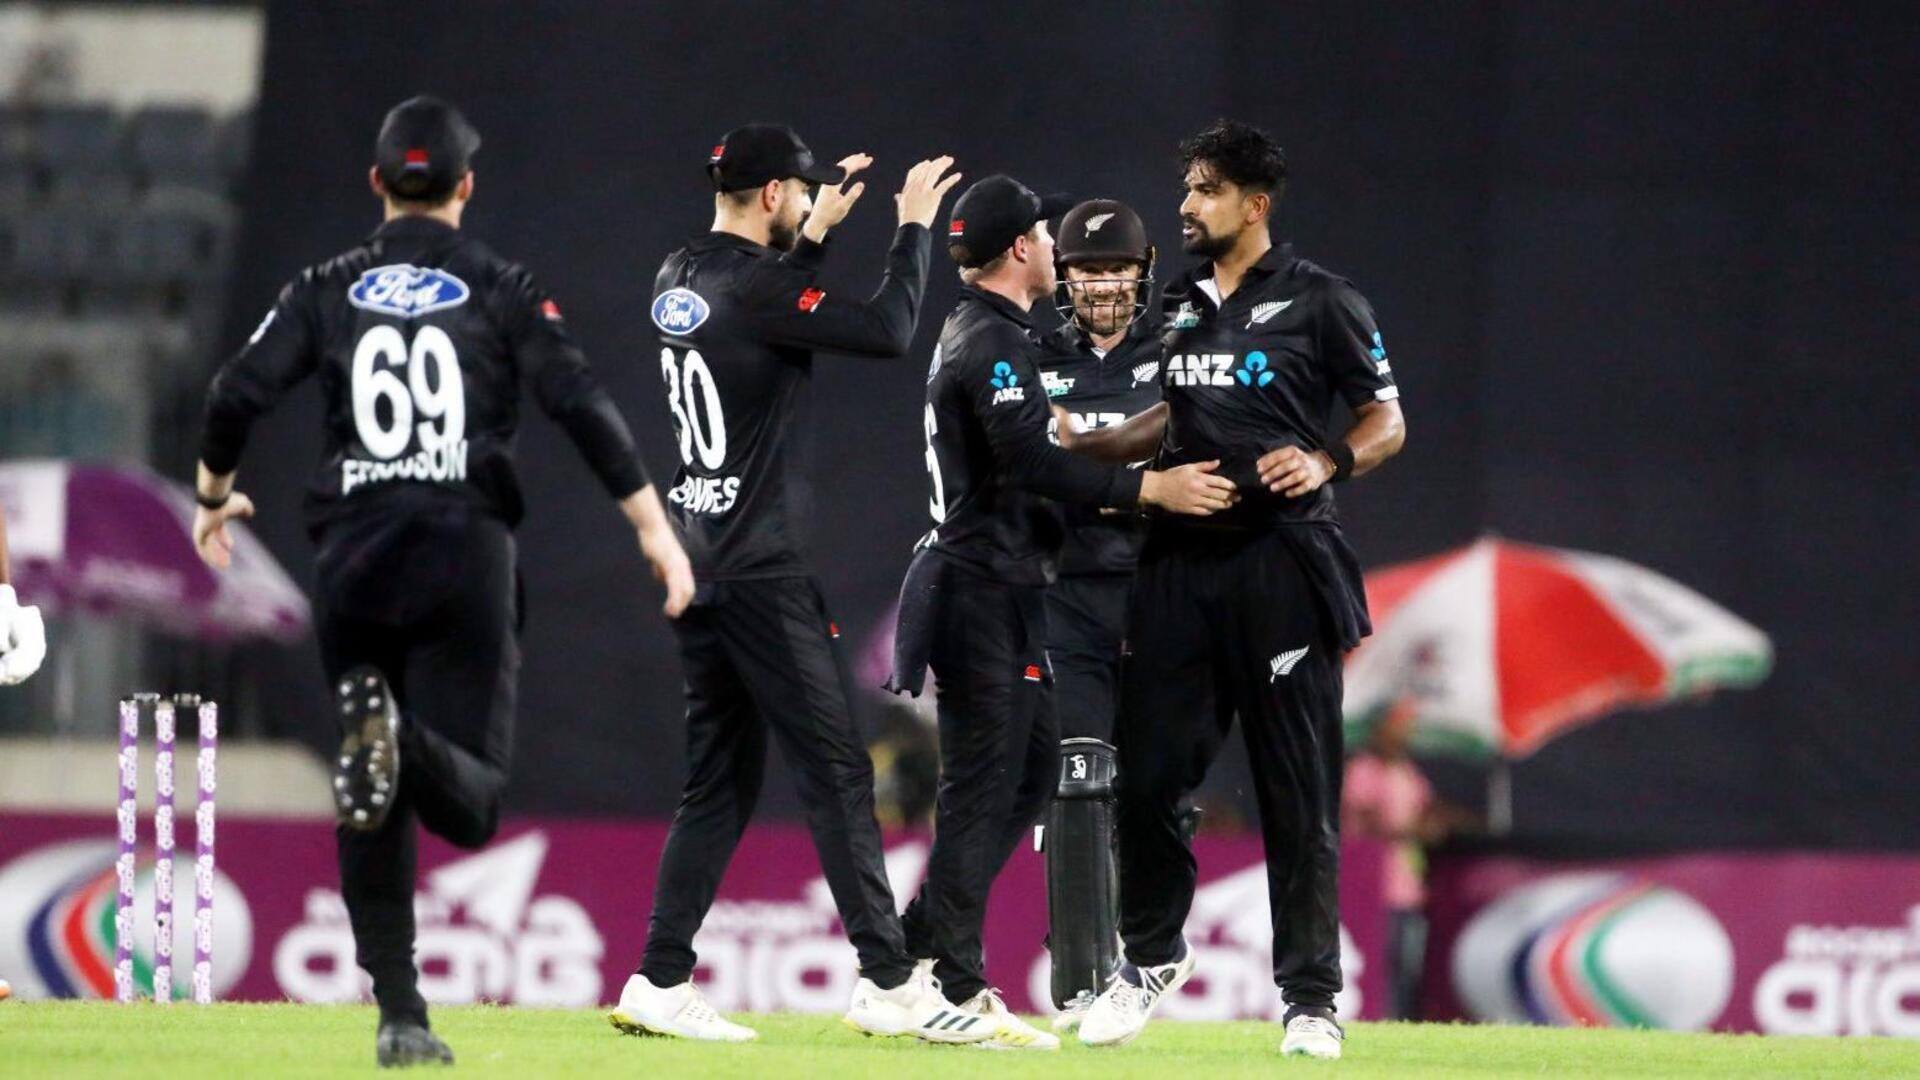 न्यूजीलैंड ने दूसरे वनडे में बांग्लादेश को हराकर सीरीज में बनाई बढ़त, ये बने रिकॉर्ड्स 